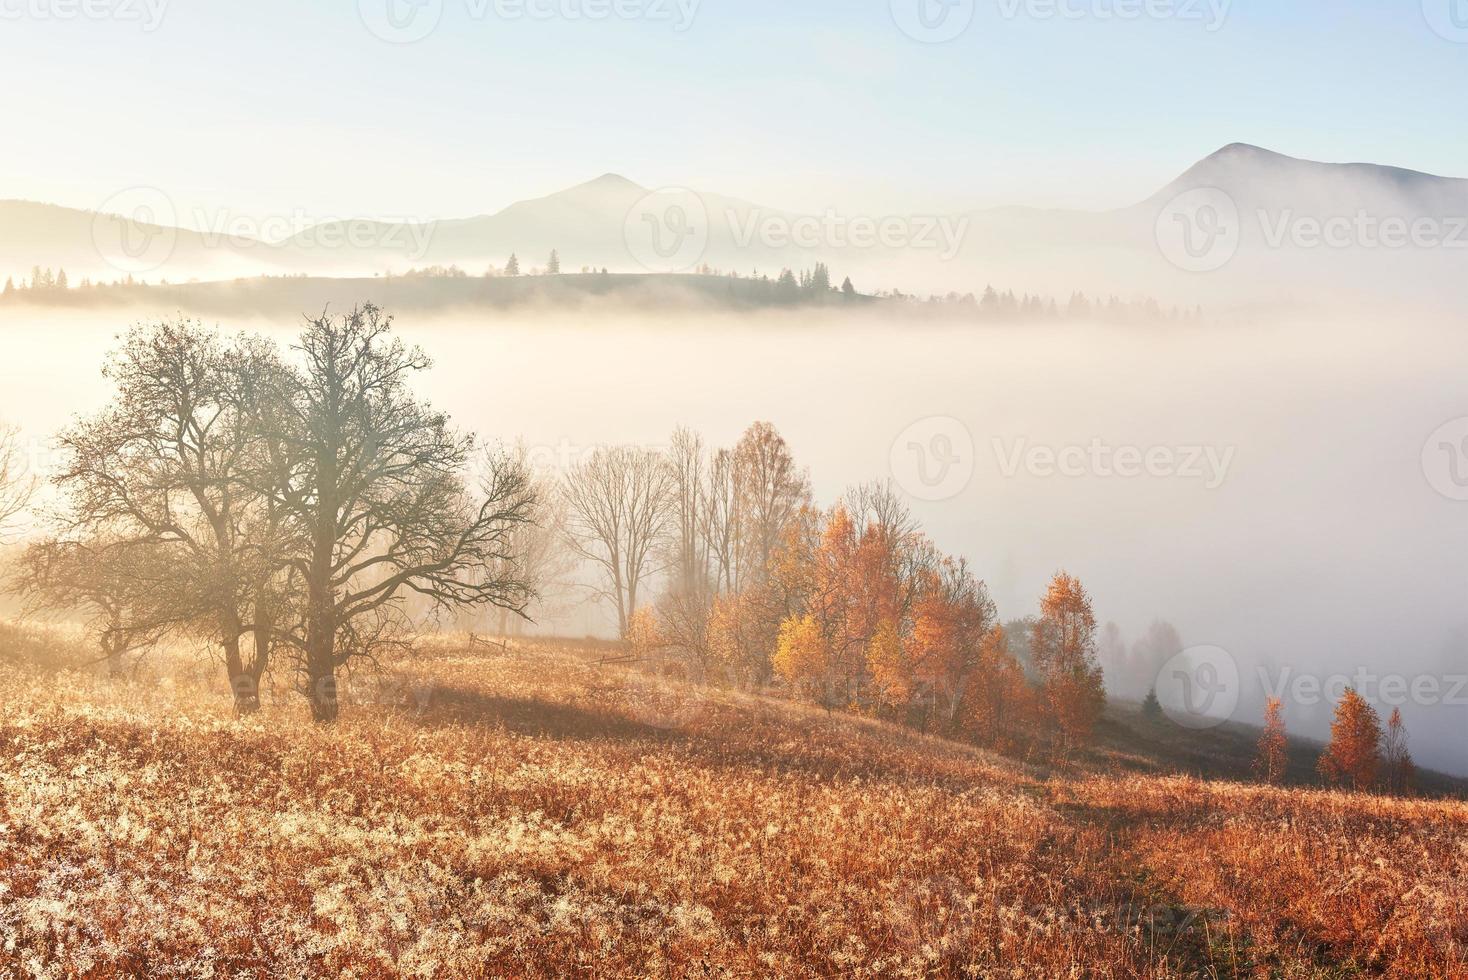 glanzende boom op een heuvelhelling met zonnige balken in het bergdal bedekt met mist. prachtige ochtendscène. rode en gele herfstbladeren. Karpaten, Oekraïne, Europa. ontdek de wereld van schoonheid foto